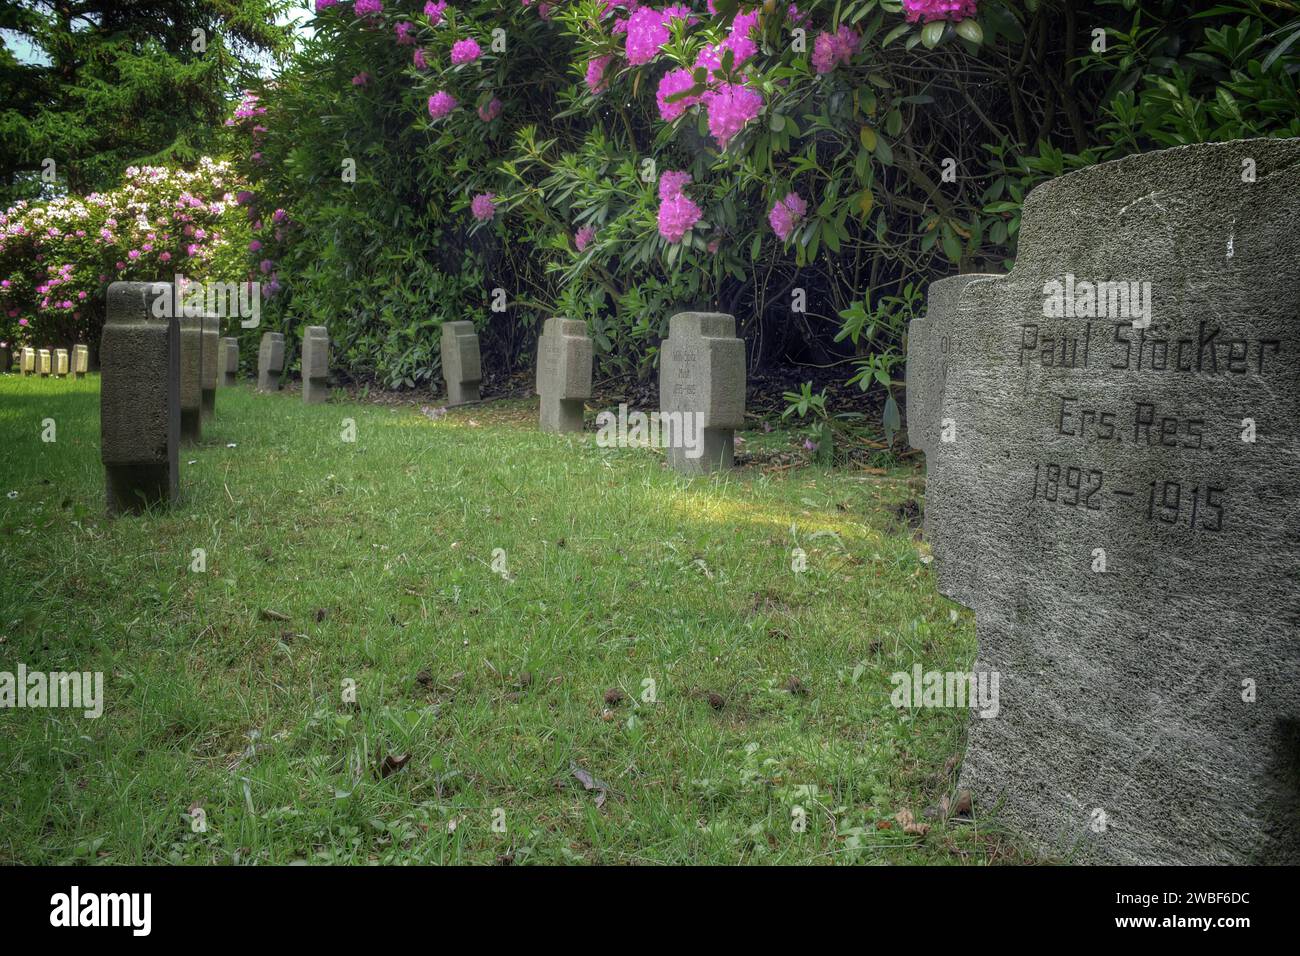 Alter Friedhof mit Grabsteinen und blühenden Sträuchern im Hintergrund, Wuppertal Elberfeld, Nordrhein-Westfalen, Deutschland Stockfoto